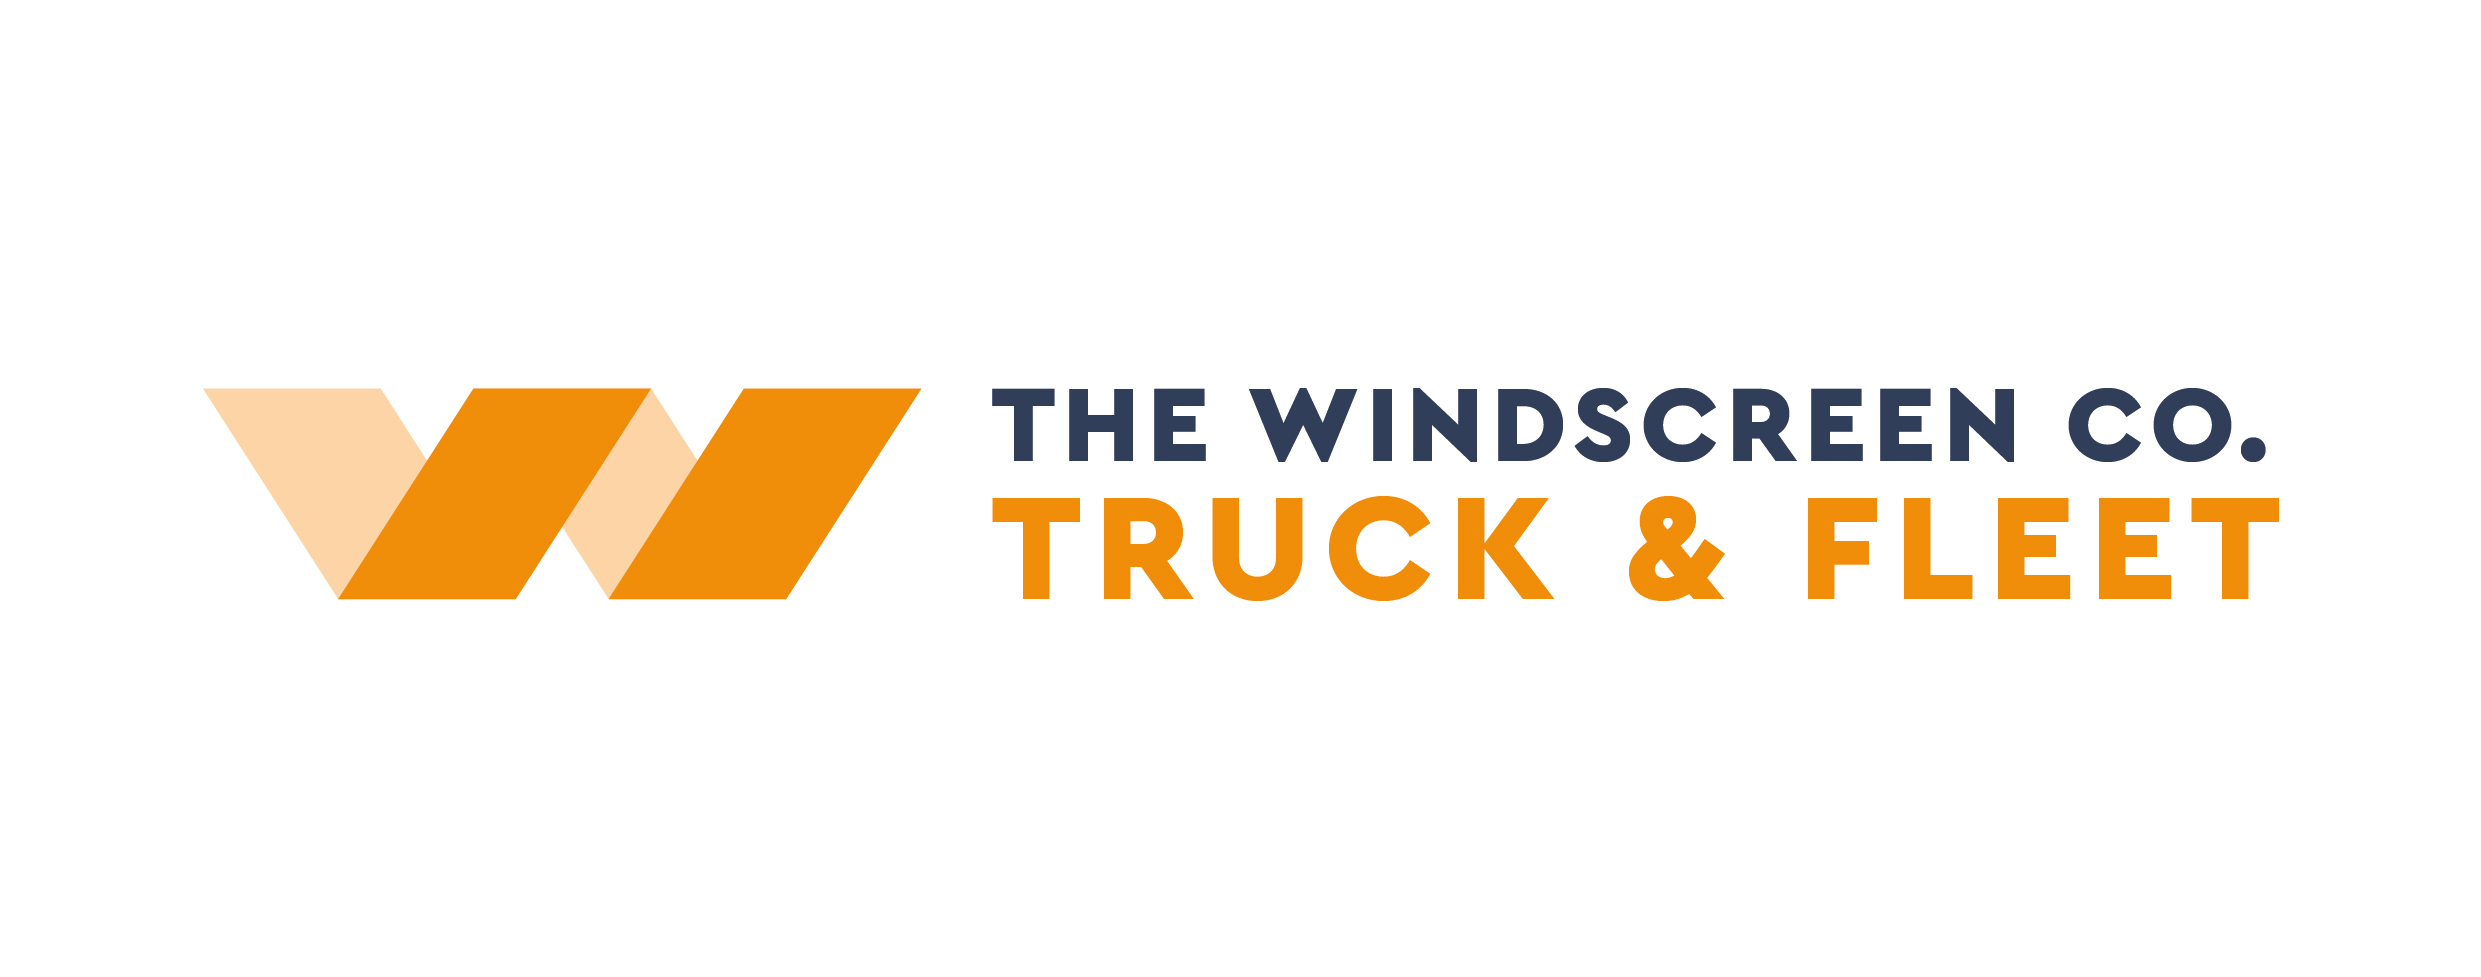 TWC Truck & Fleet New Logo